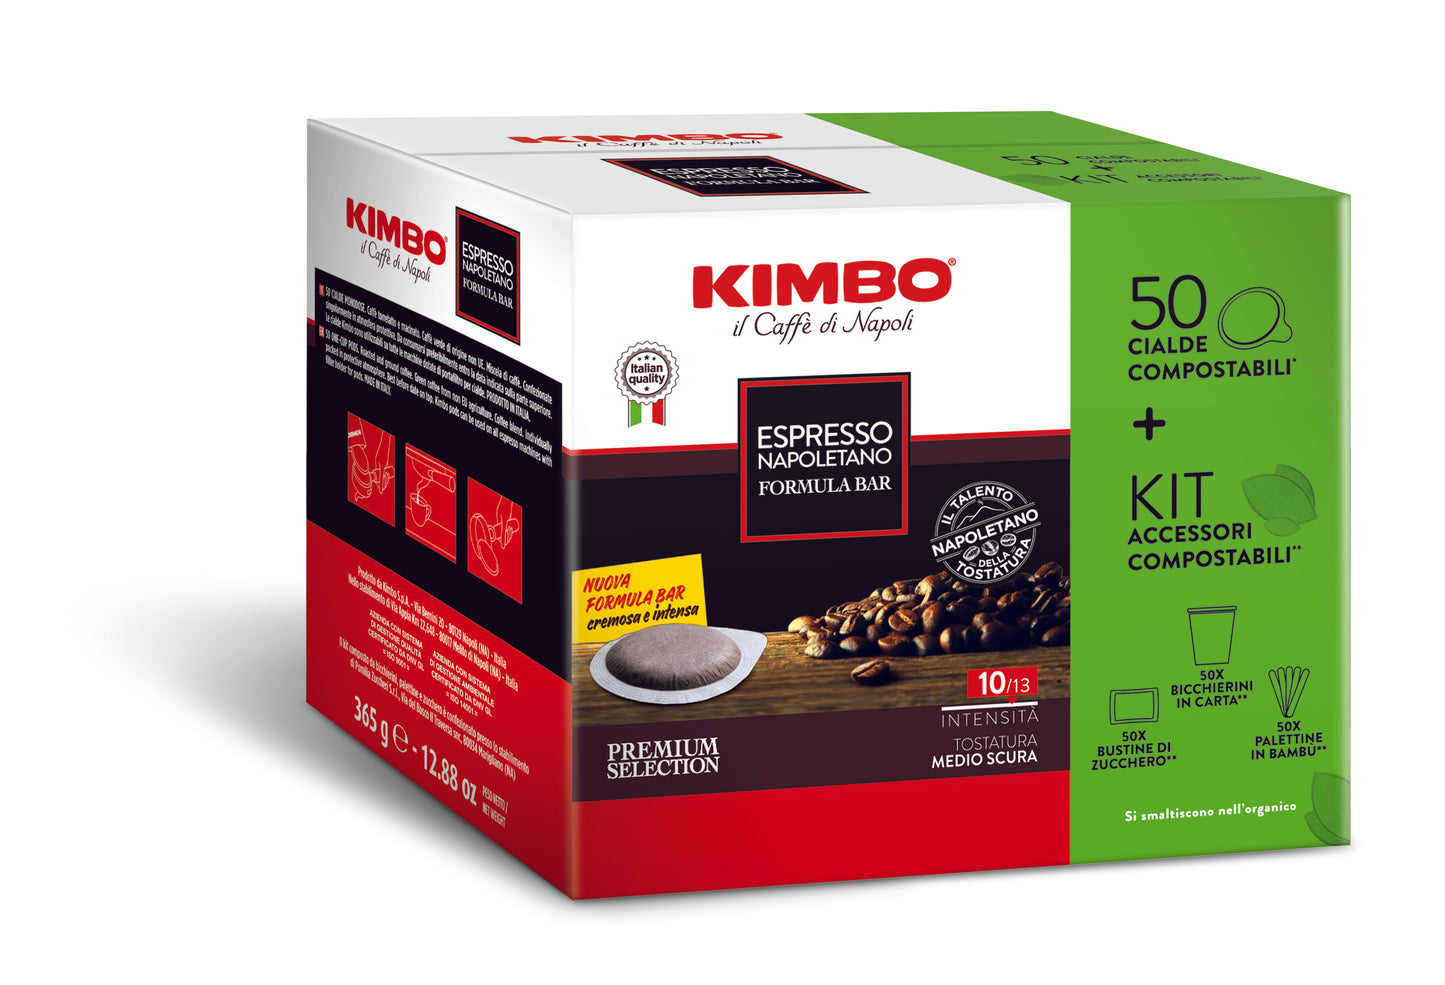 
                  
                    Kimbo Espresso Napoletano formula bar kit 50 cialde compostabili + accessori
                  
                